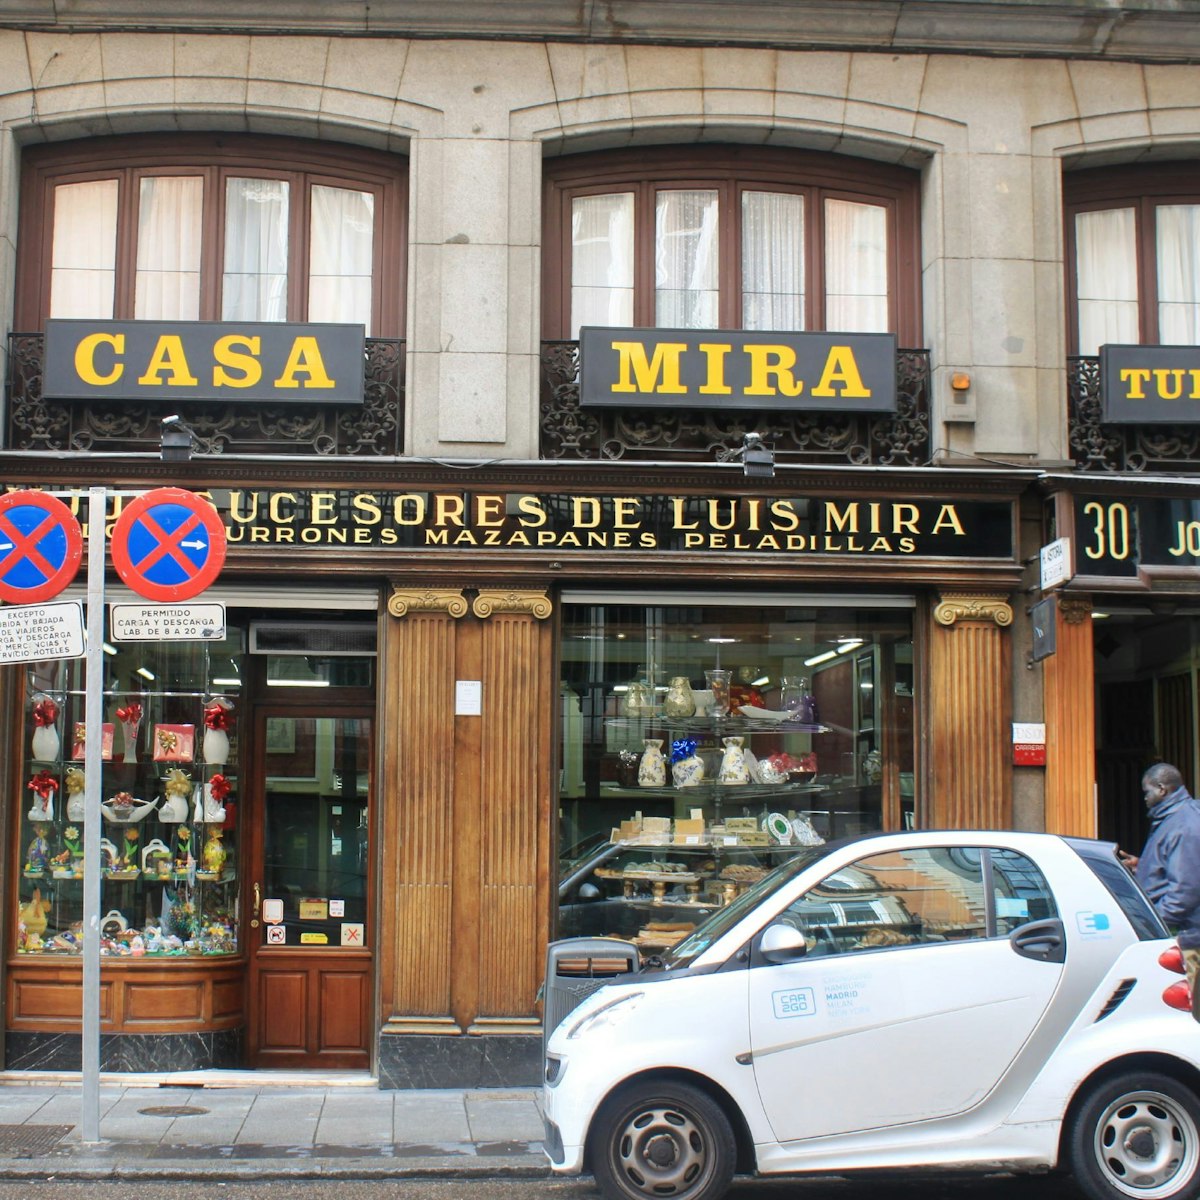 Casa Mira proudly advertises their turrones.